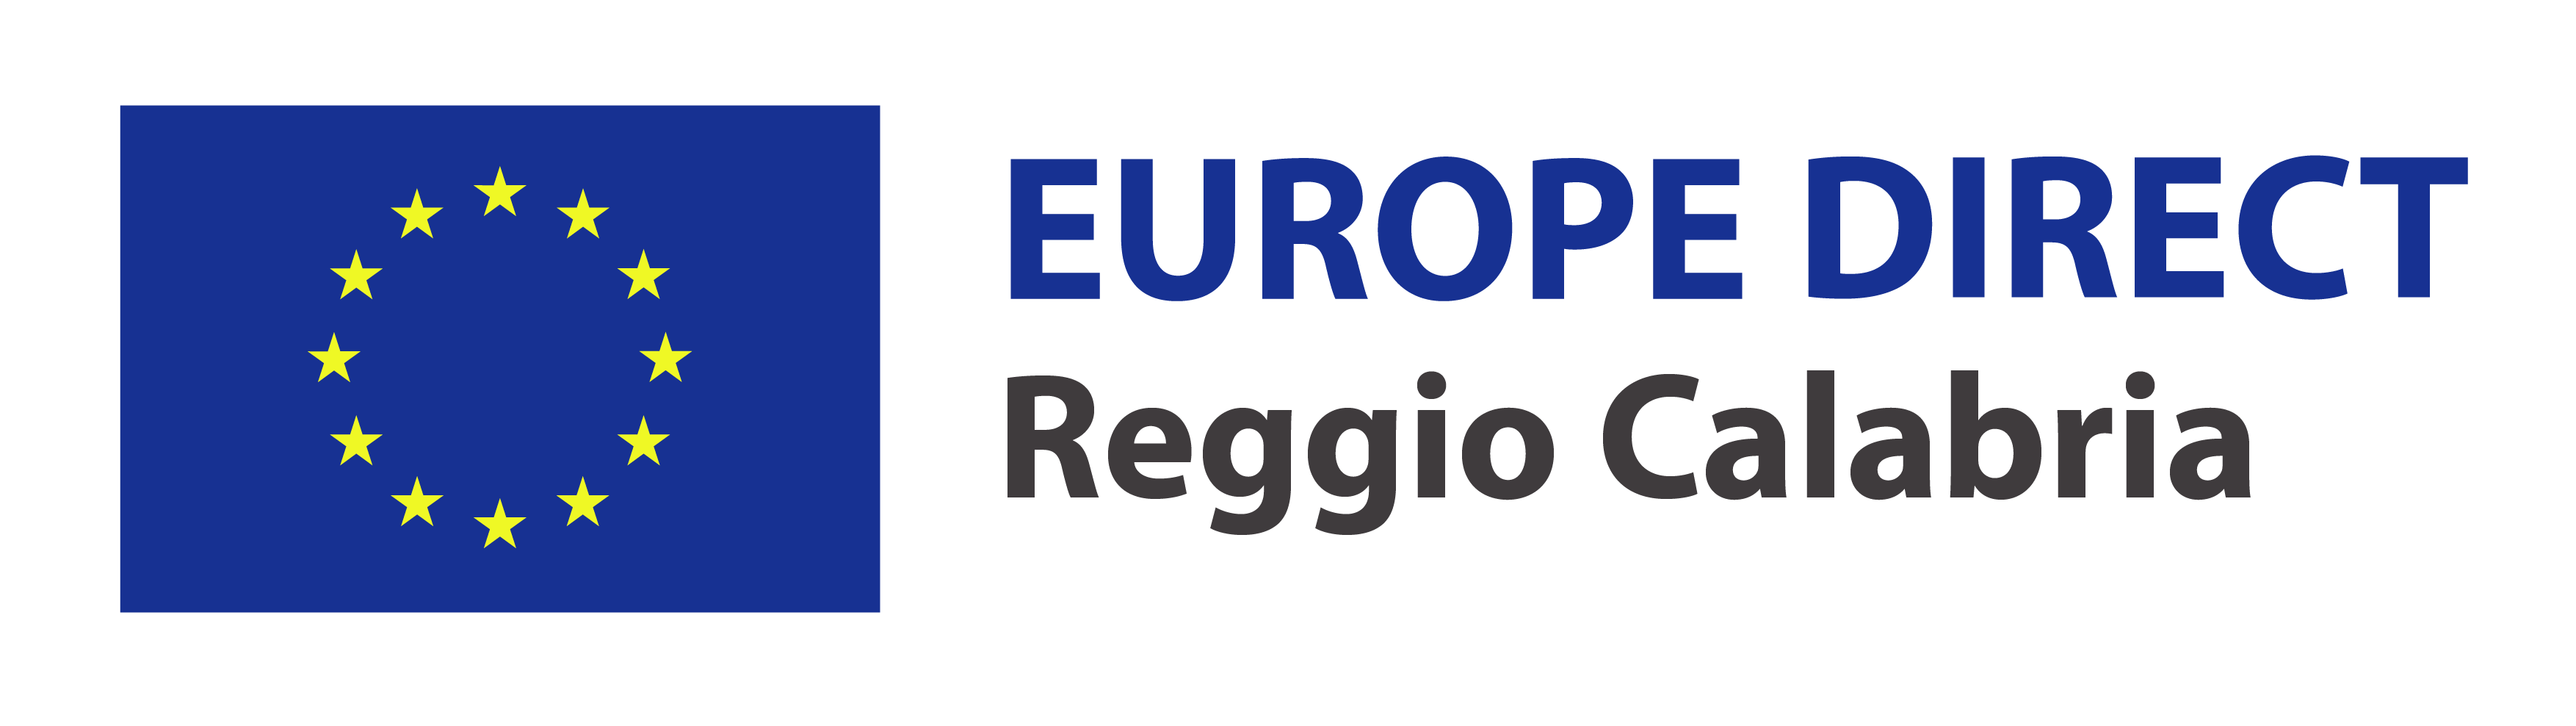 europe direct - logo